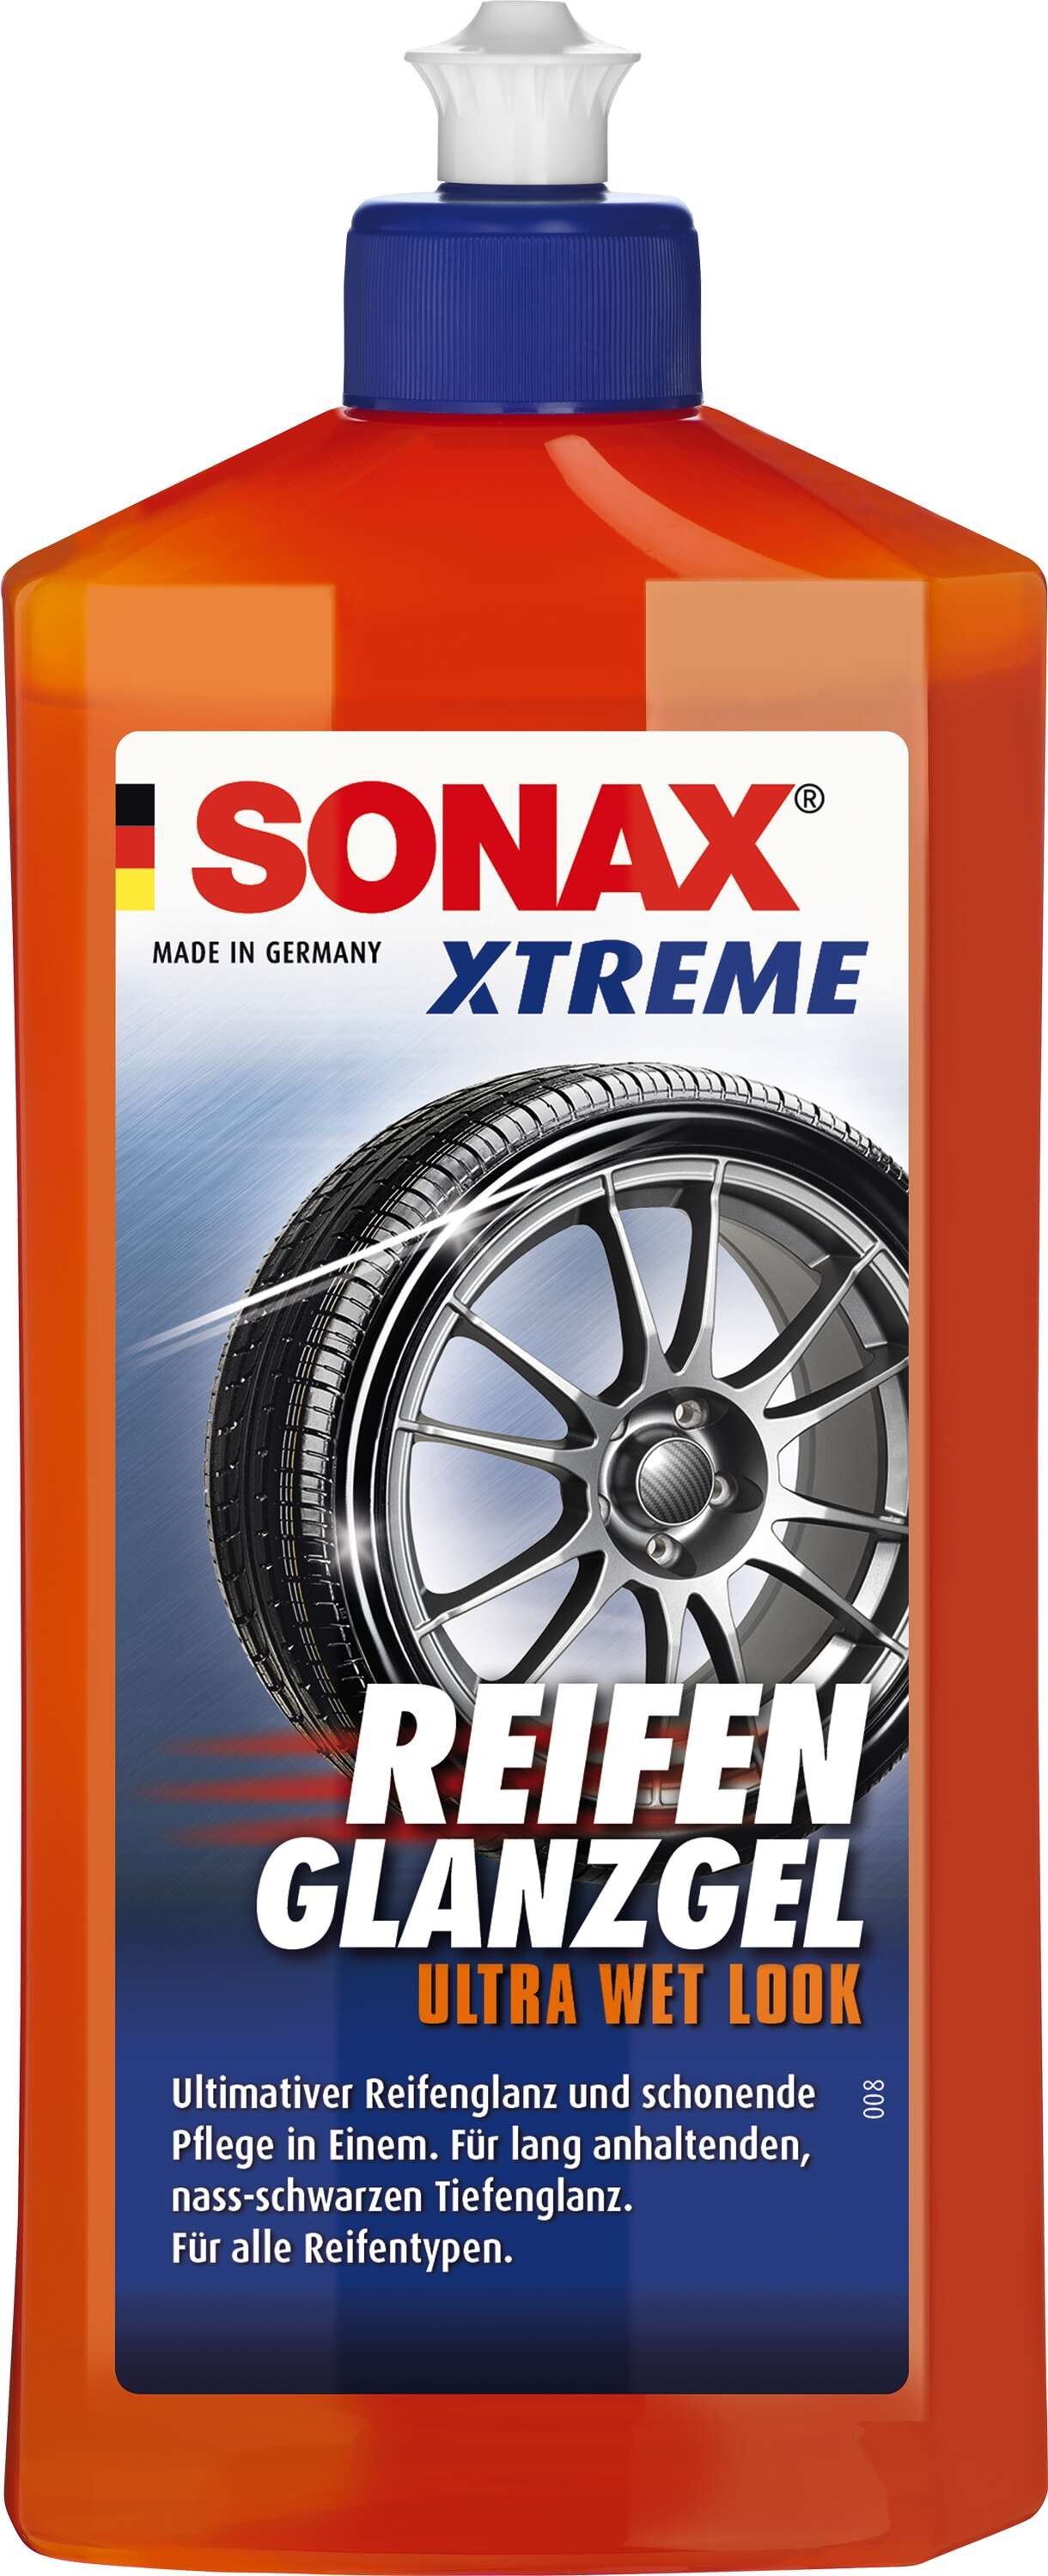 SONAX XTREME Reifen-GlangGel 500 ml ULitera Wet Look